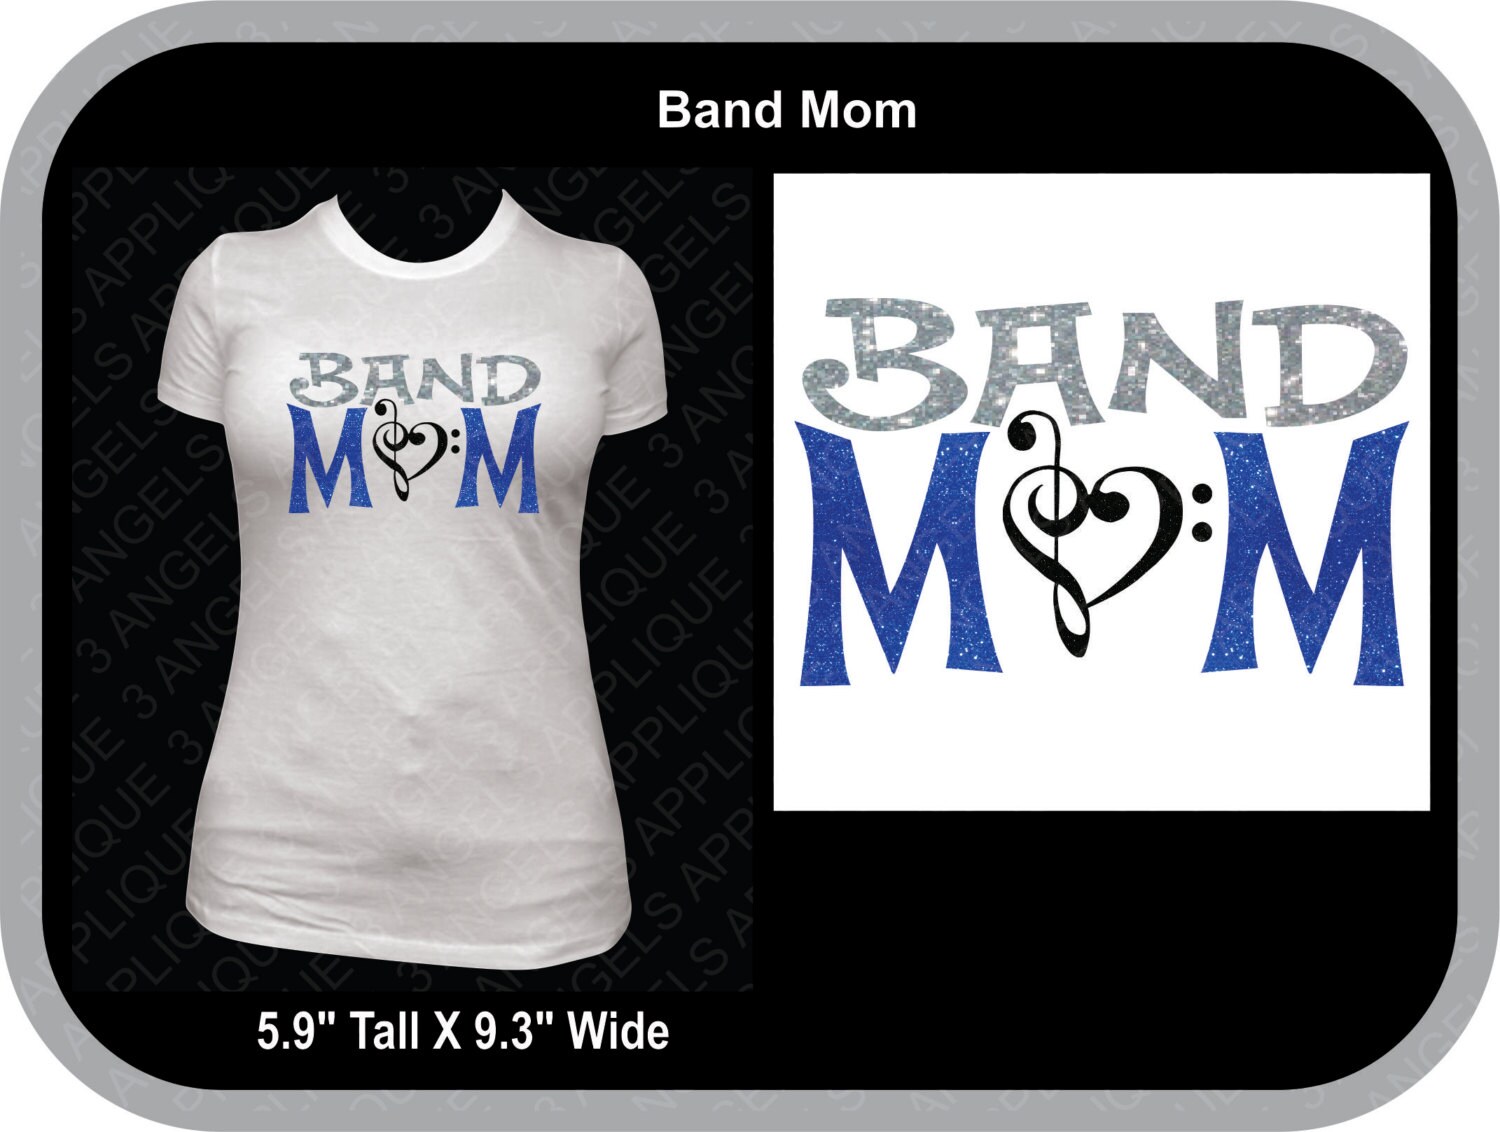 Band Mom SVG Cutter Design INSTANT DOWNLOAD